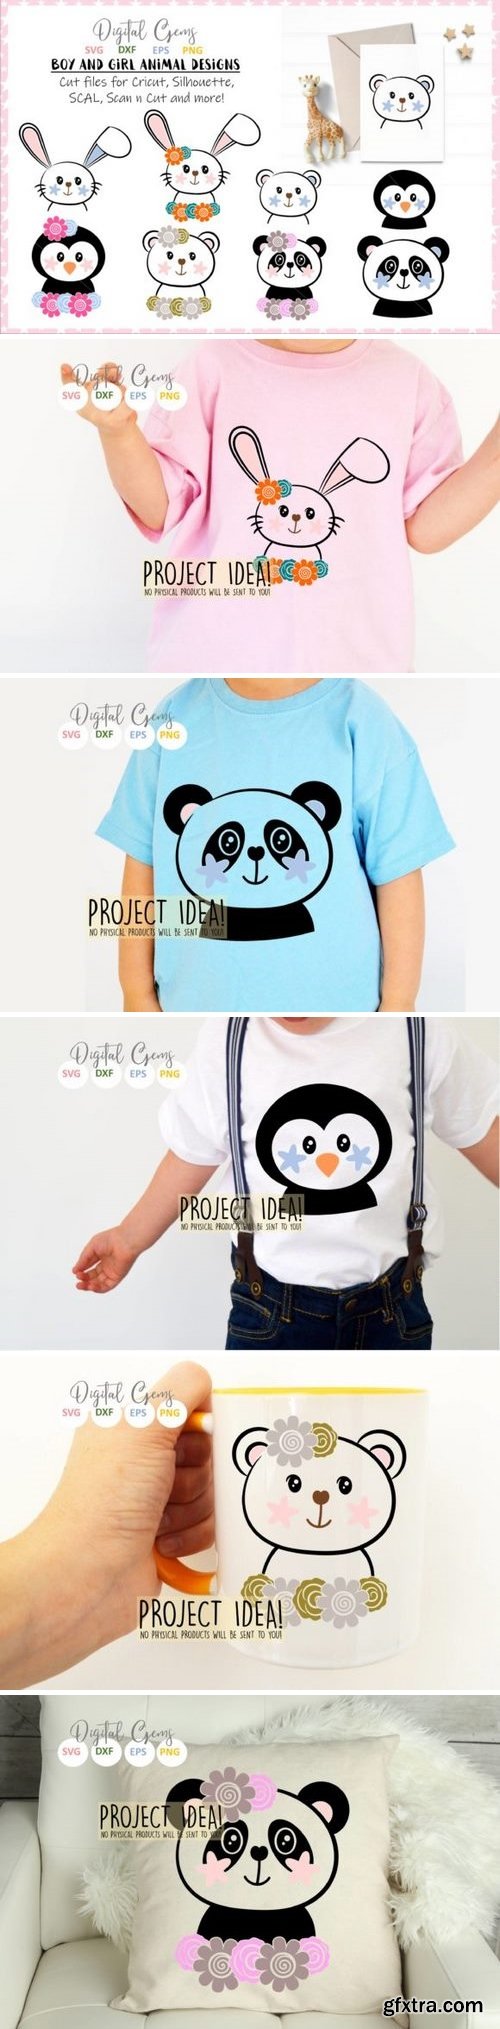 Rabbit, Penguin, Bear, Panda designs